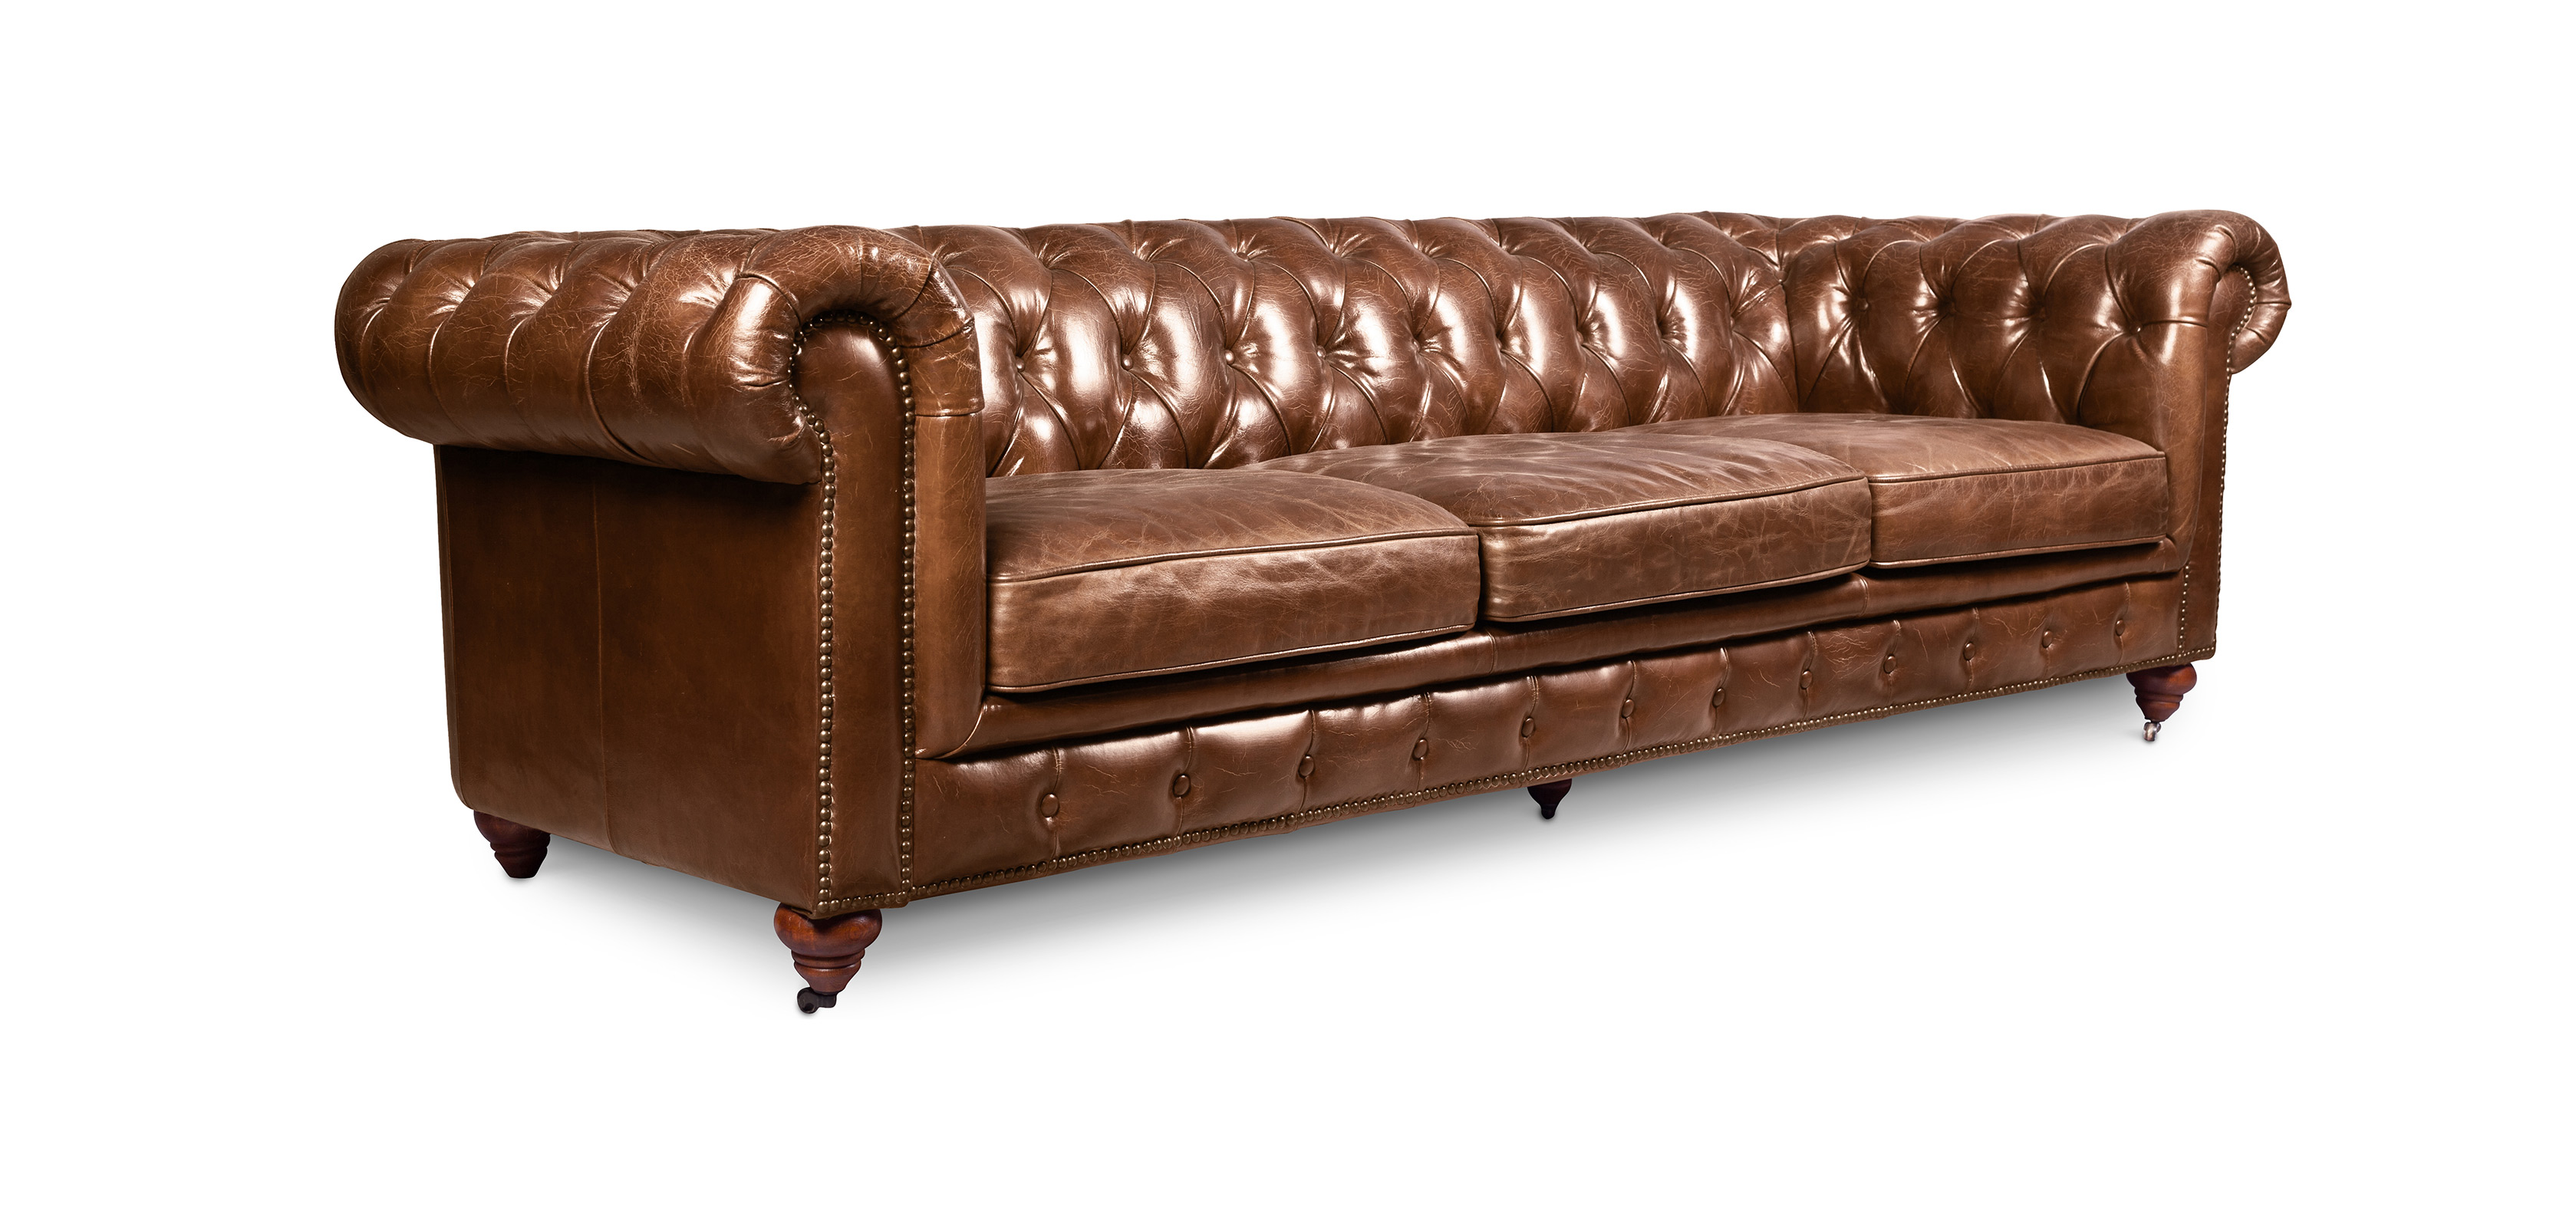 england leather sofa reviews